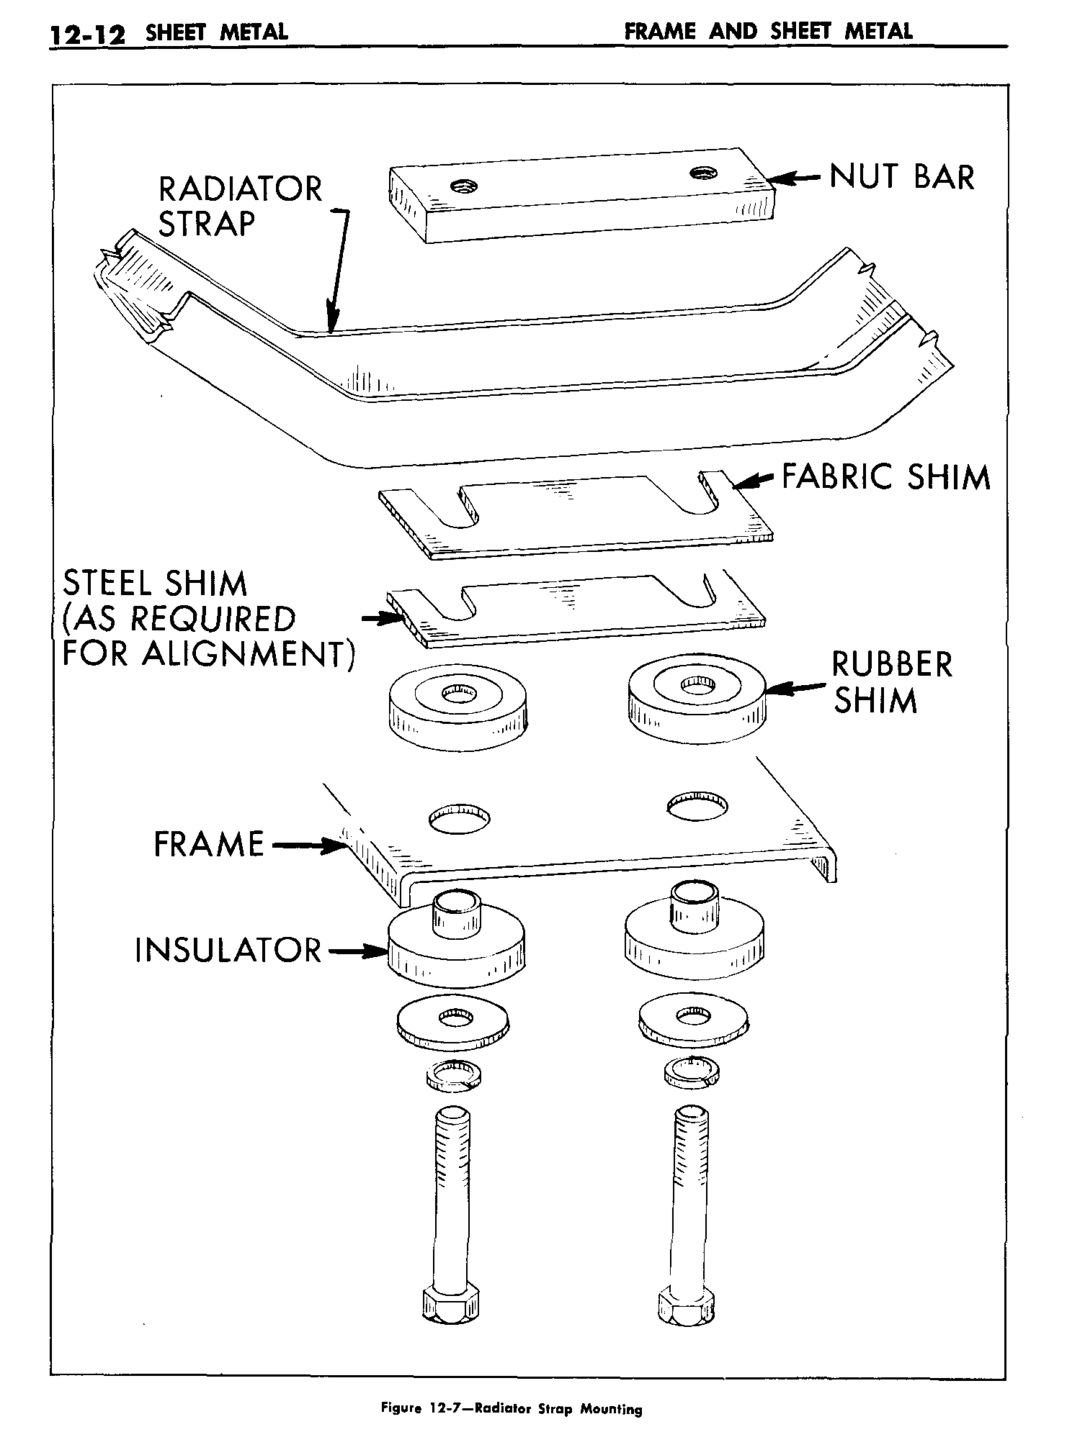 n_13 1959 Buick Shop Manual - Frame & Sheet Metal-012-012.jpg